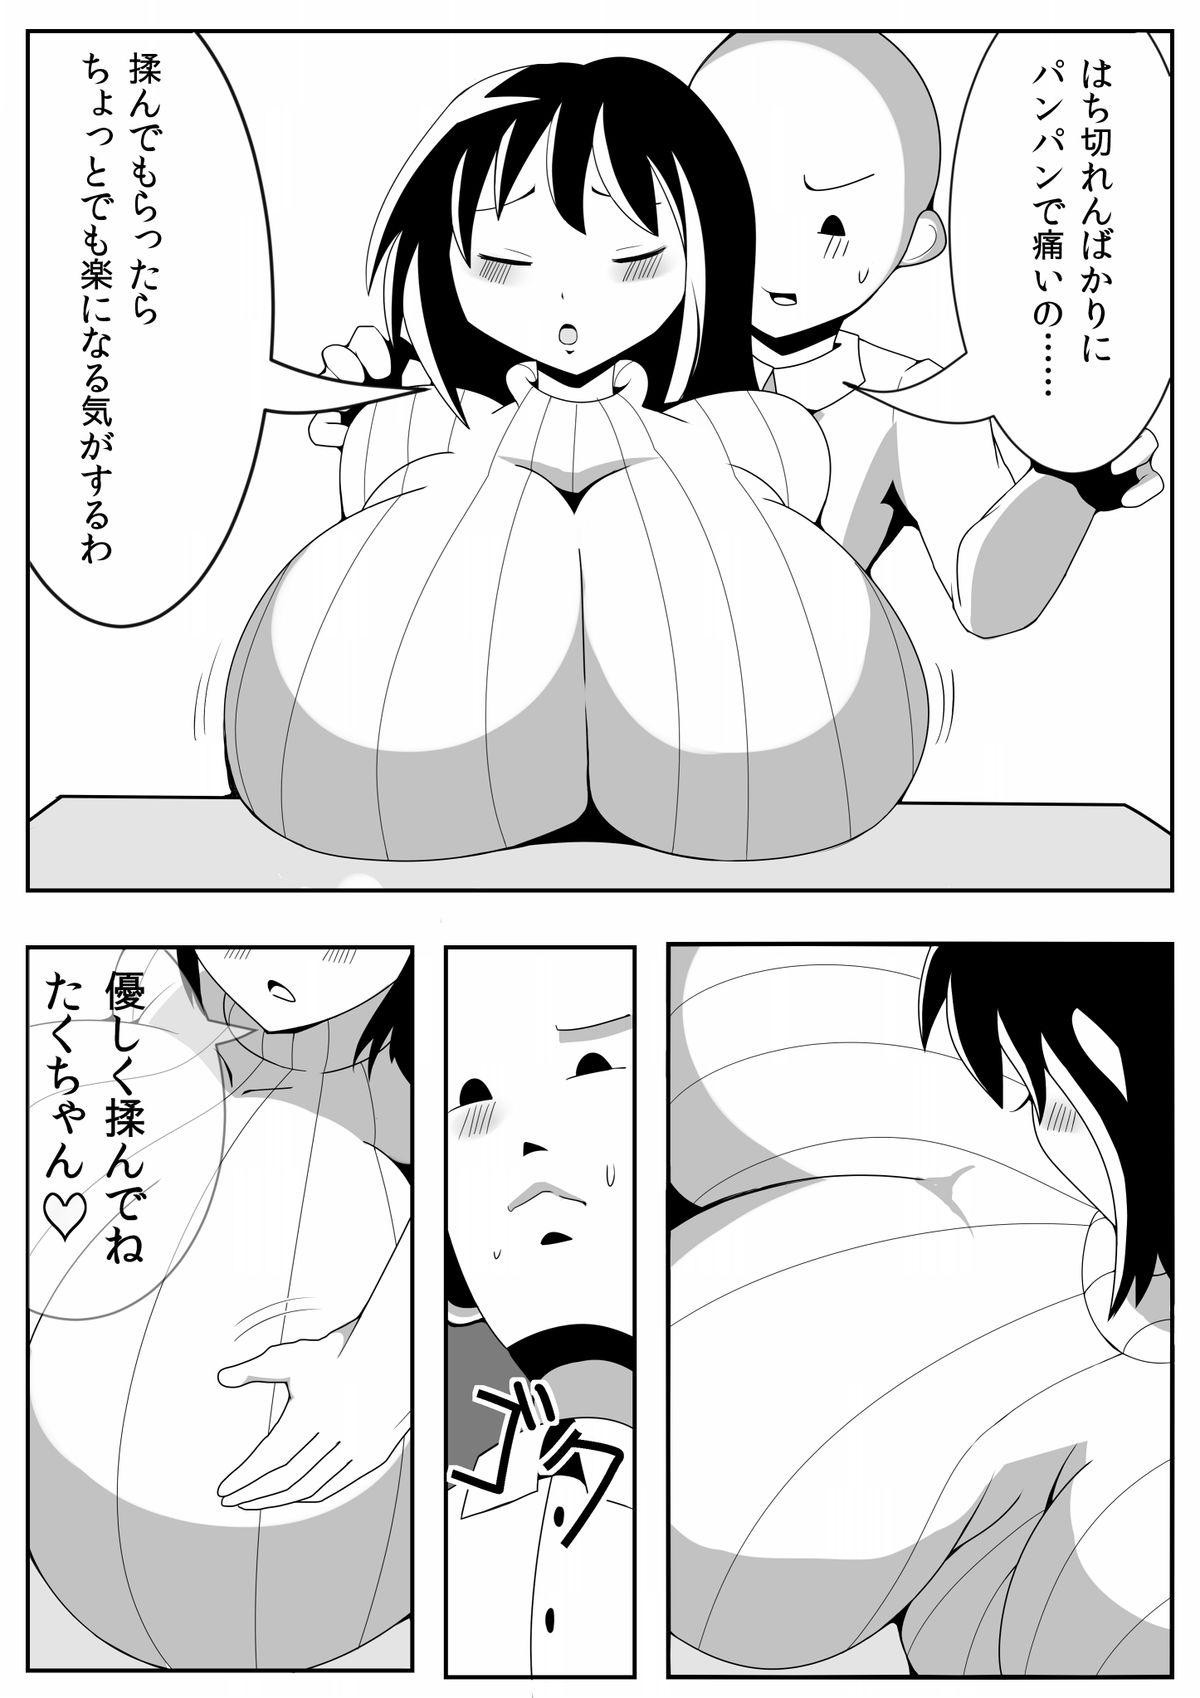 Mms Asaokitara Oppai Konnani ga Okkiku Nacchatta First Time - Page 6